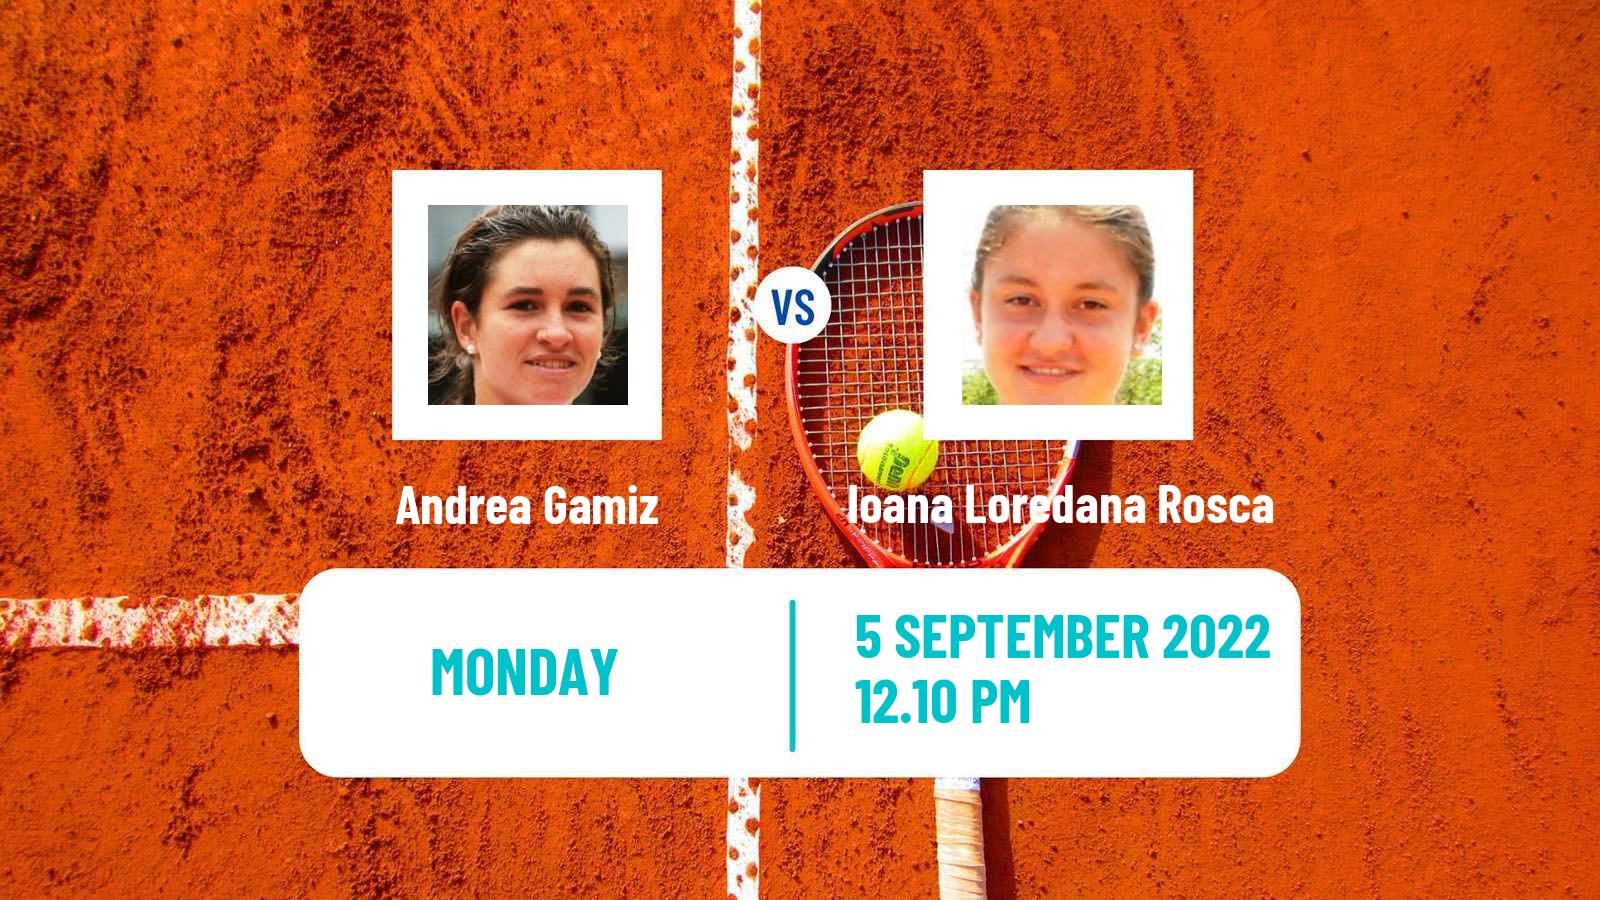 Tennis ATP Challenger Andrea Gamiz - Ioana Loredana Rosca